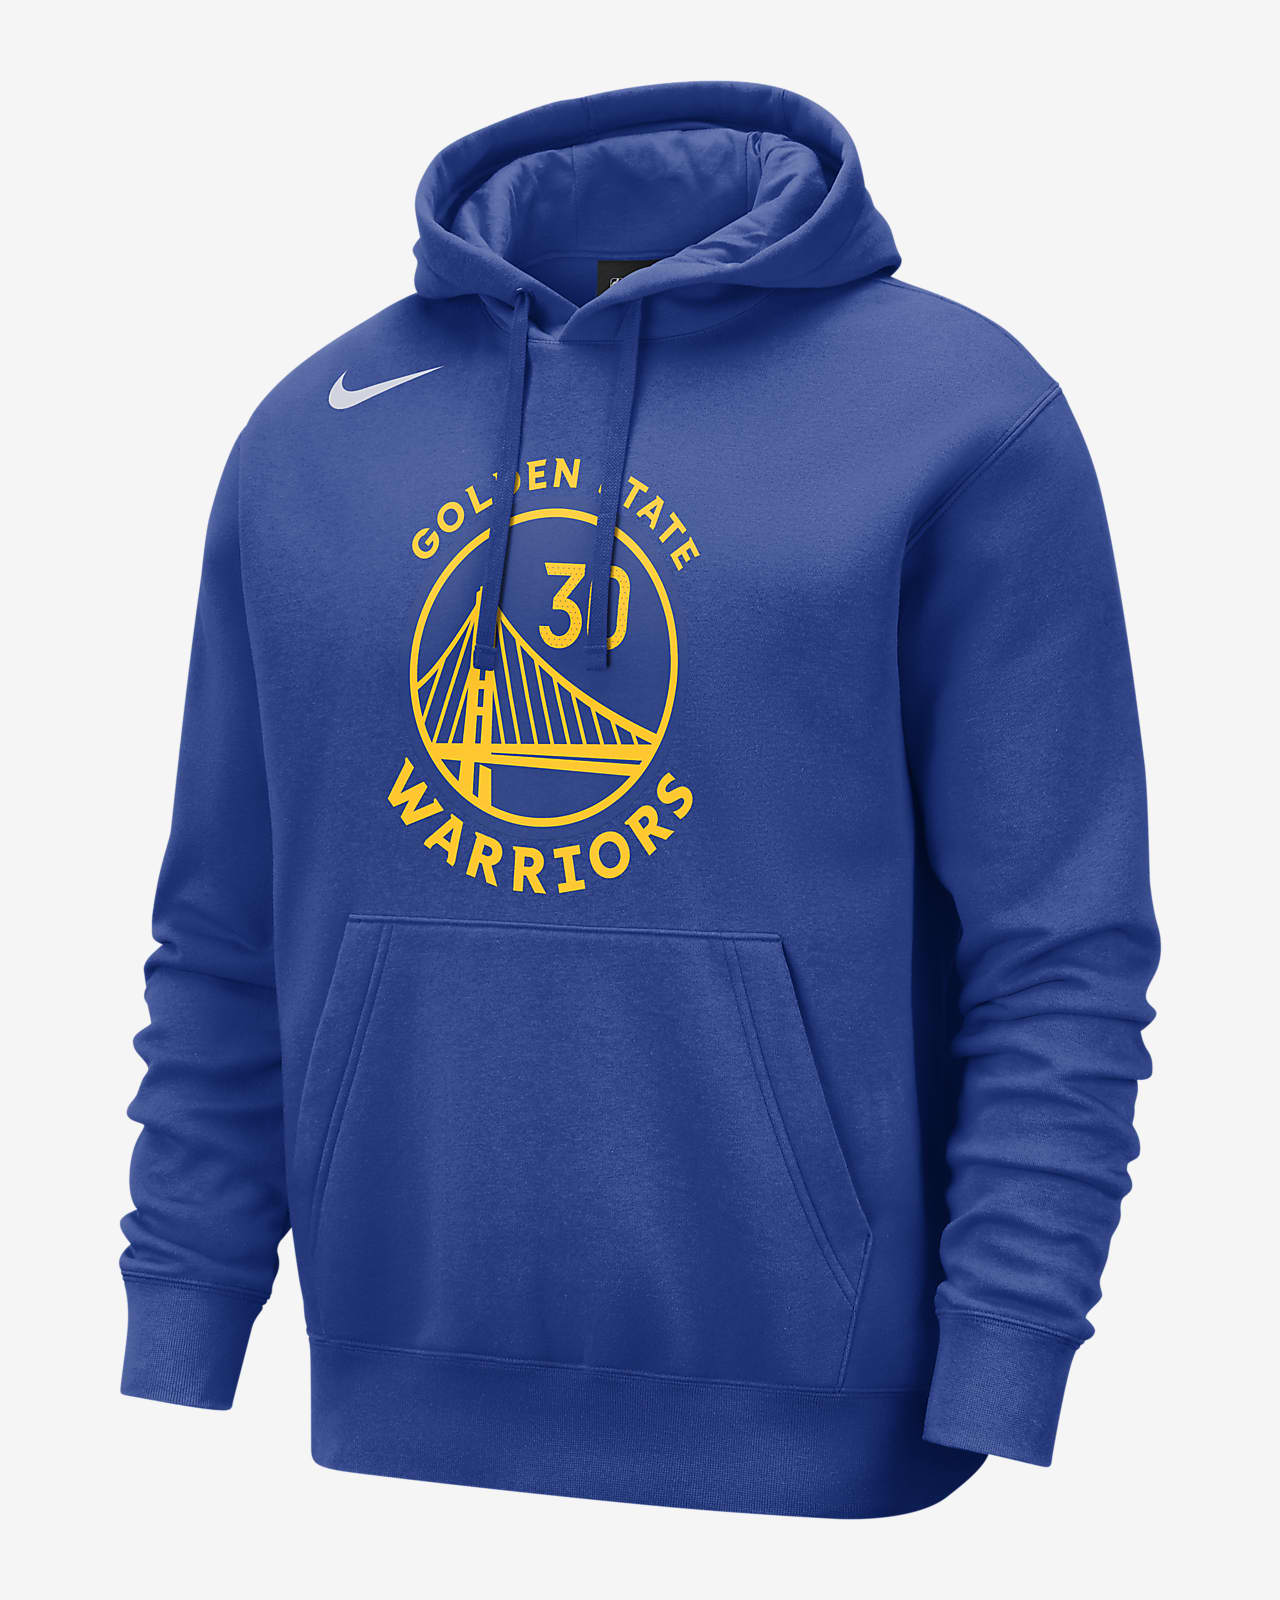 Golden State Warriors Club Nike NBA Kapüşonlu Erkek Sweatshirt'ü